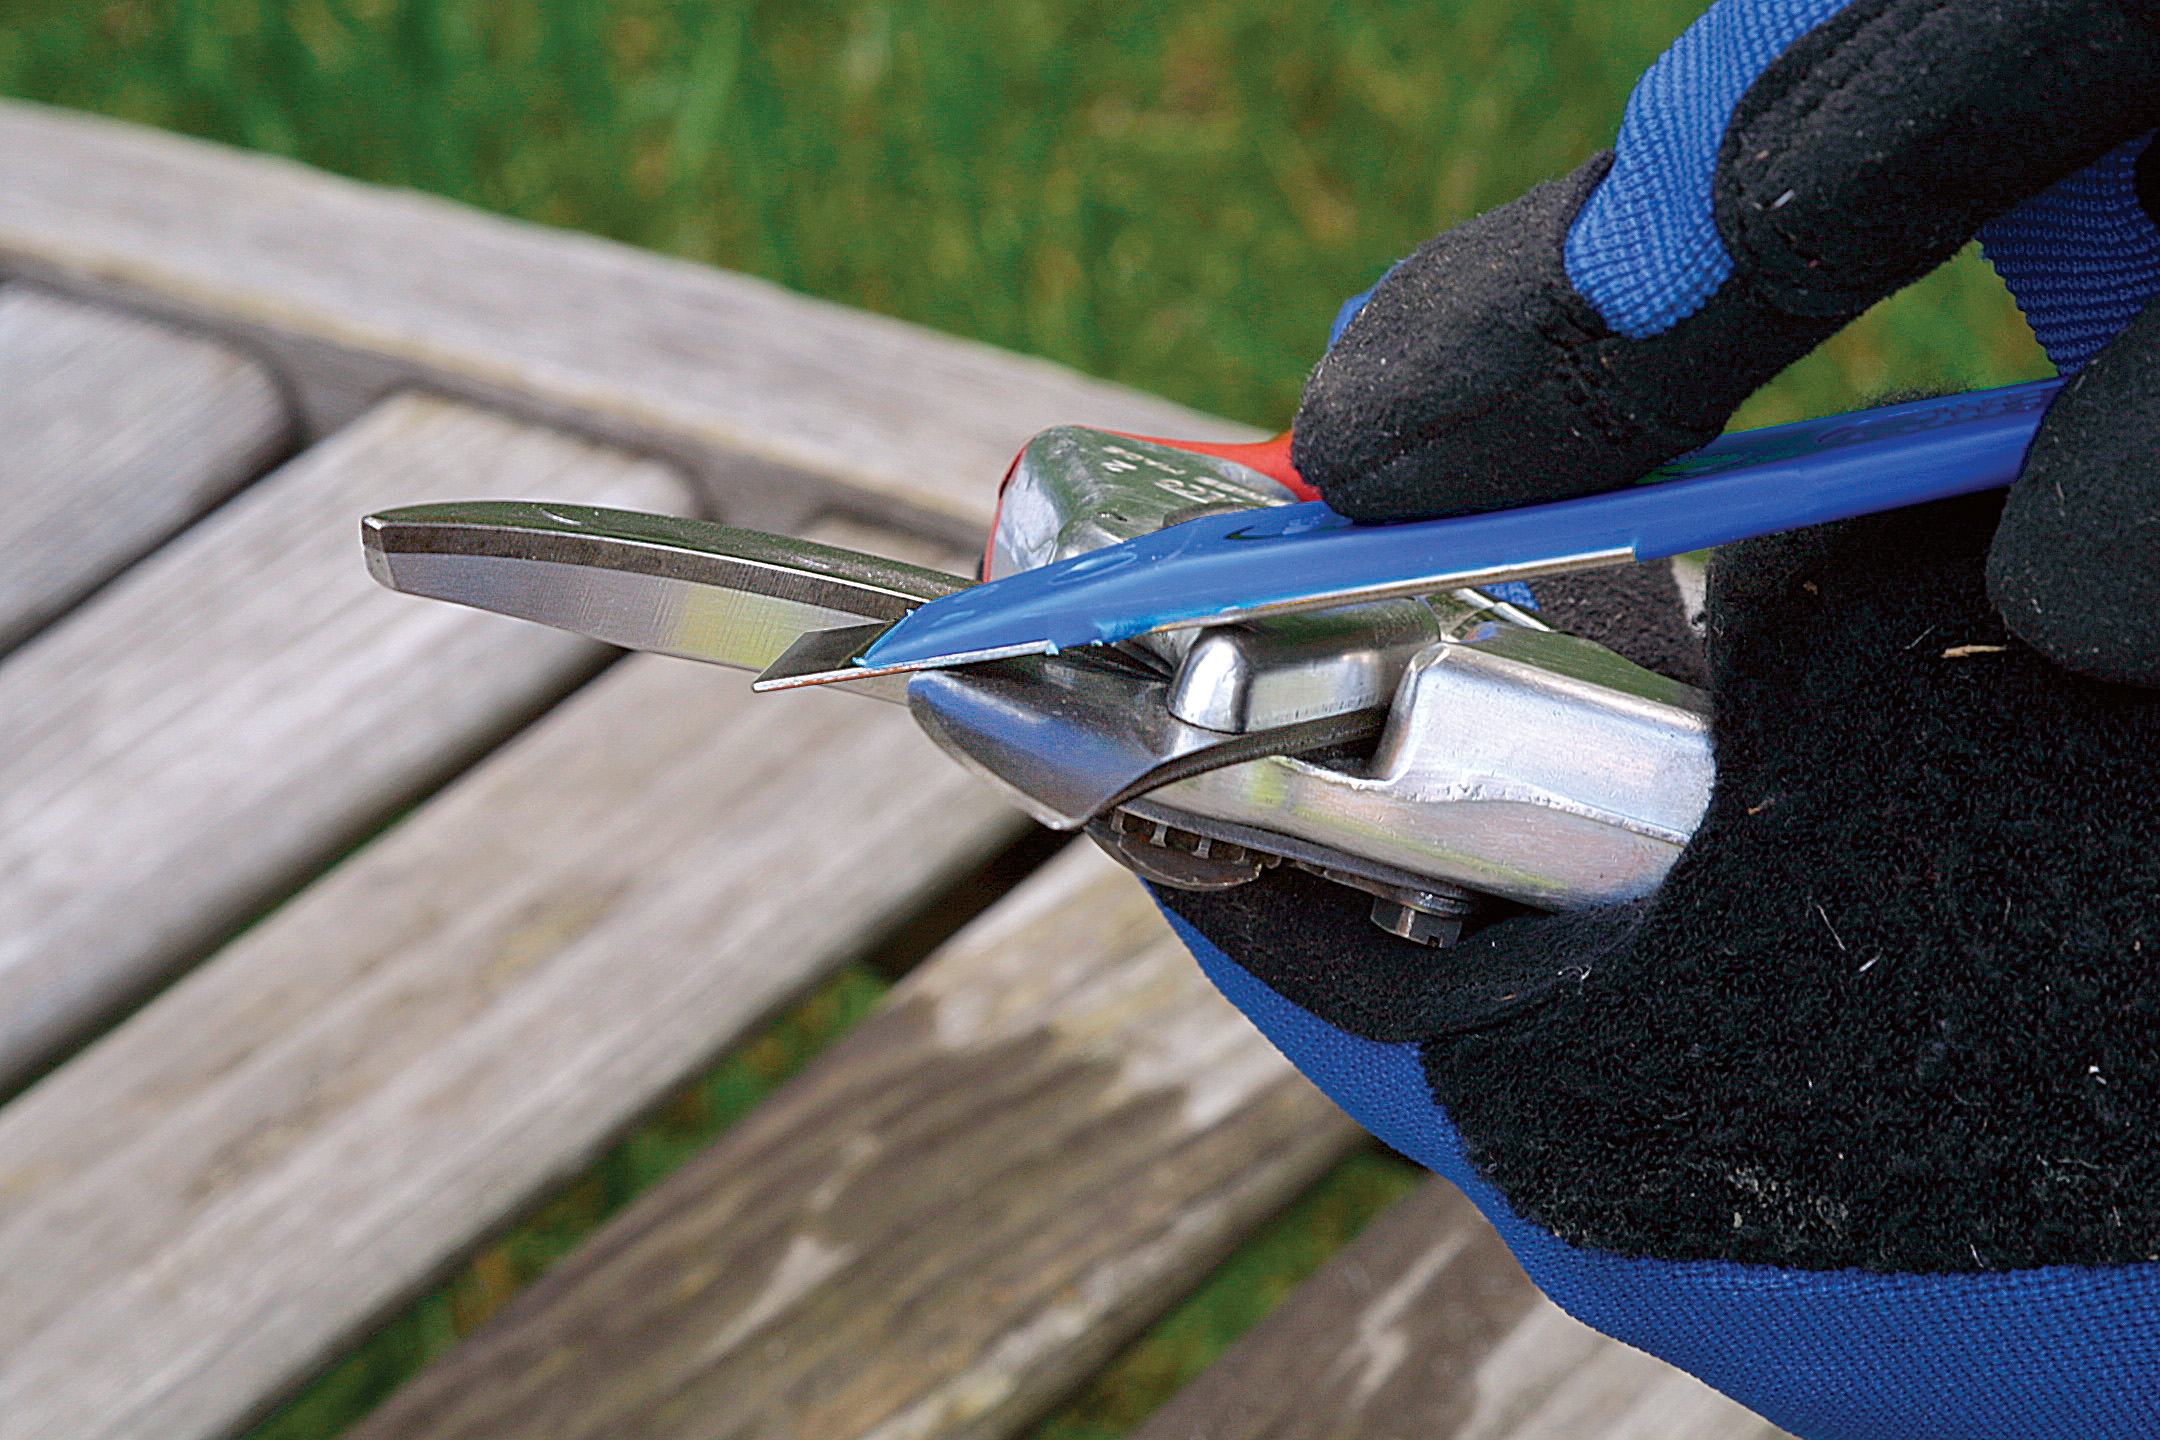 How to sharpen garden shears in 7 easy steps